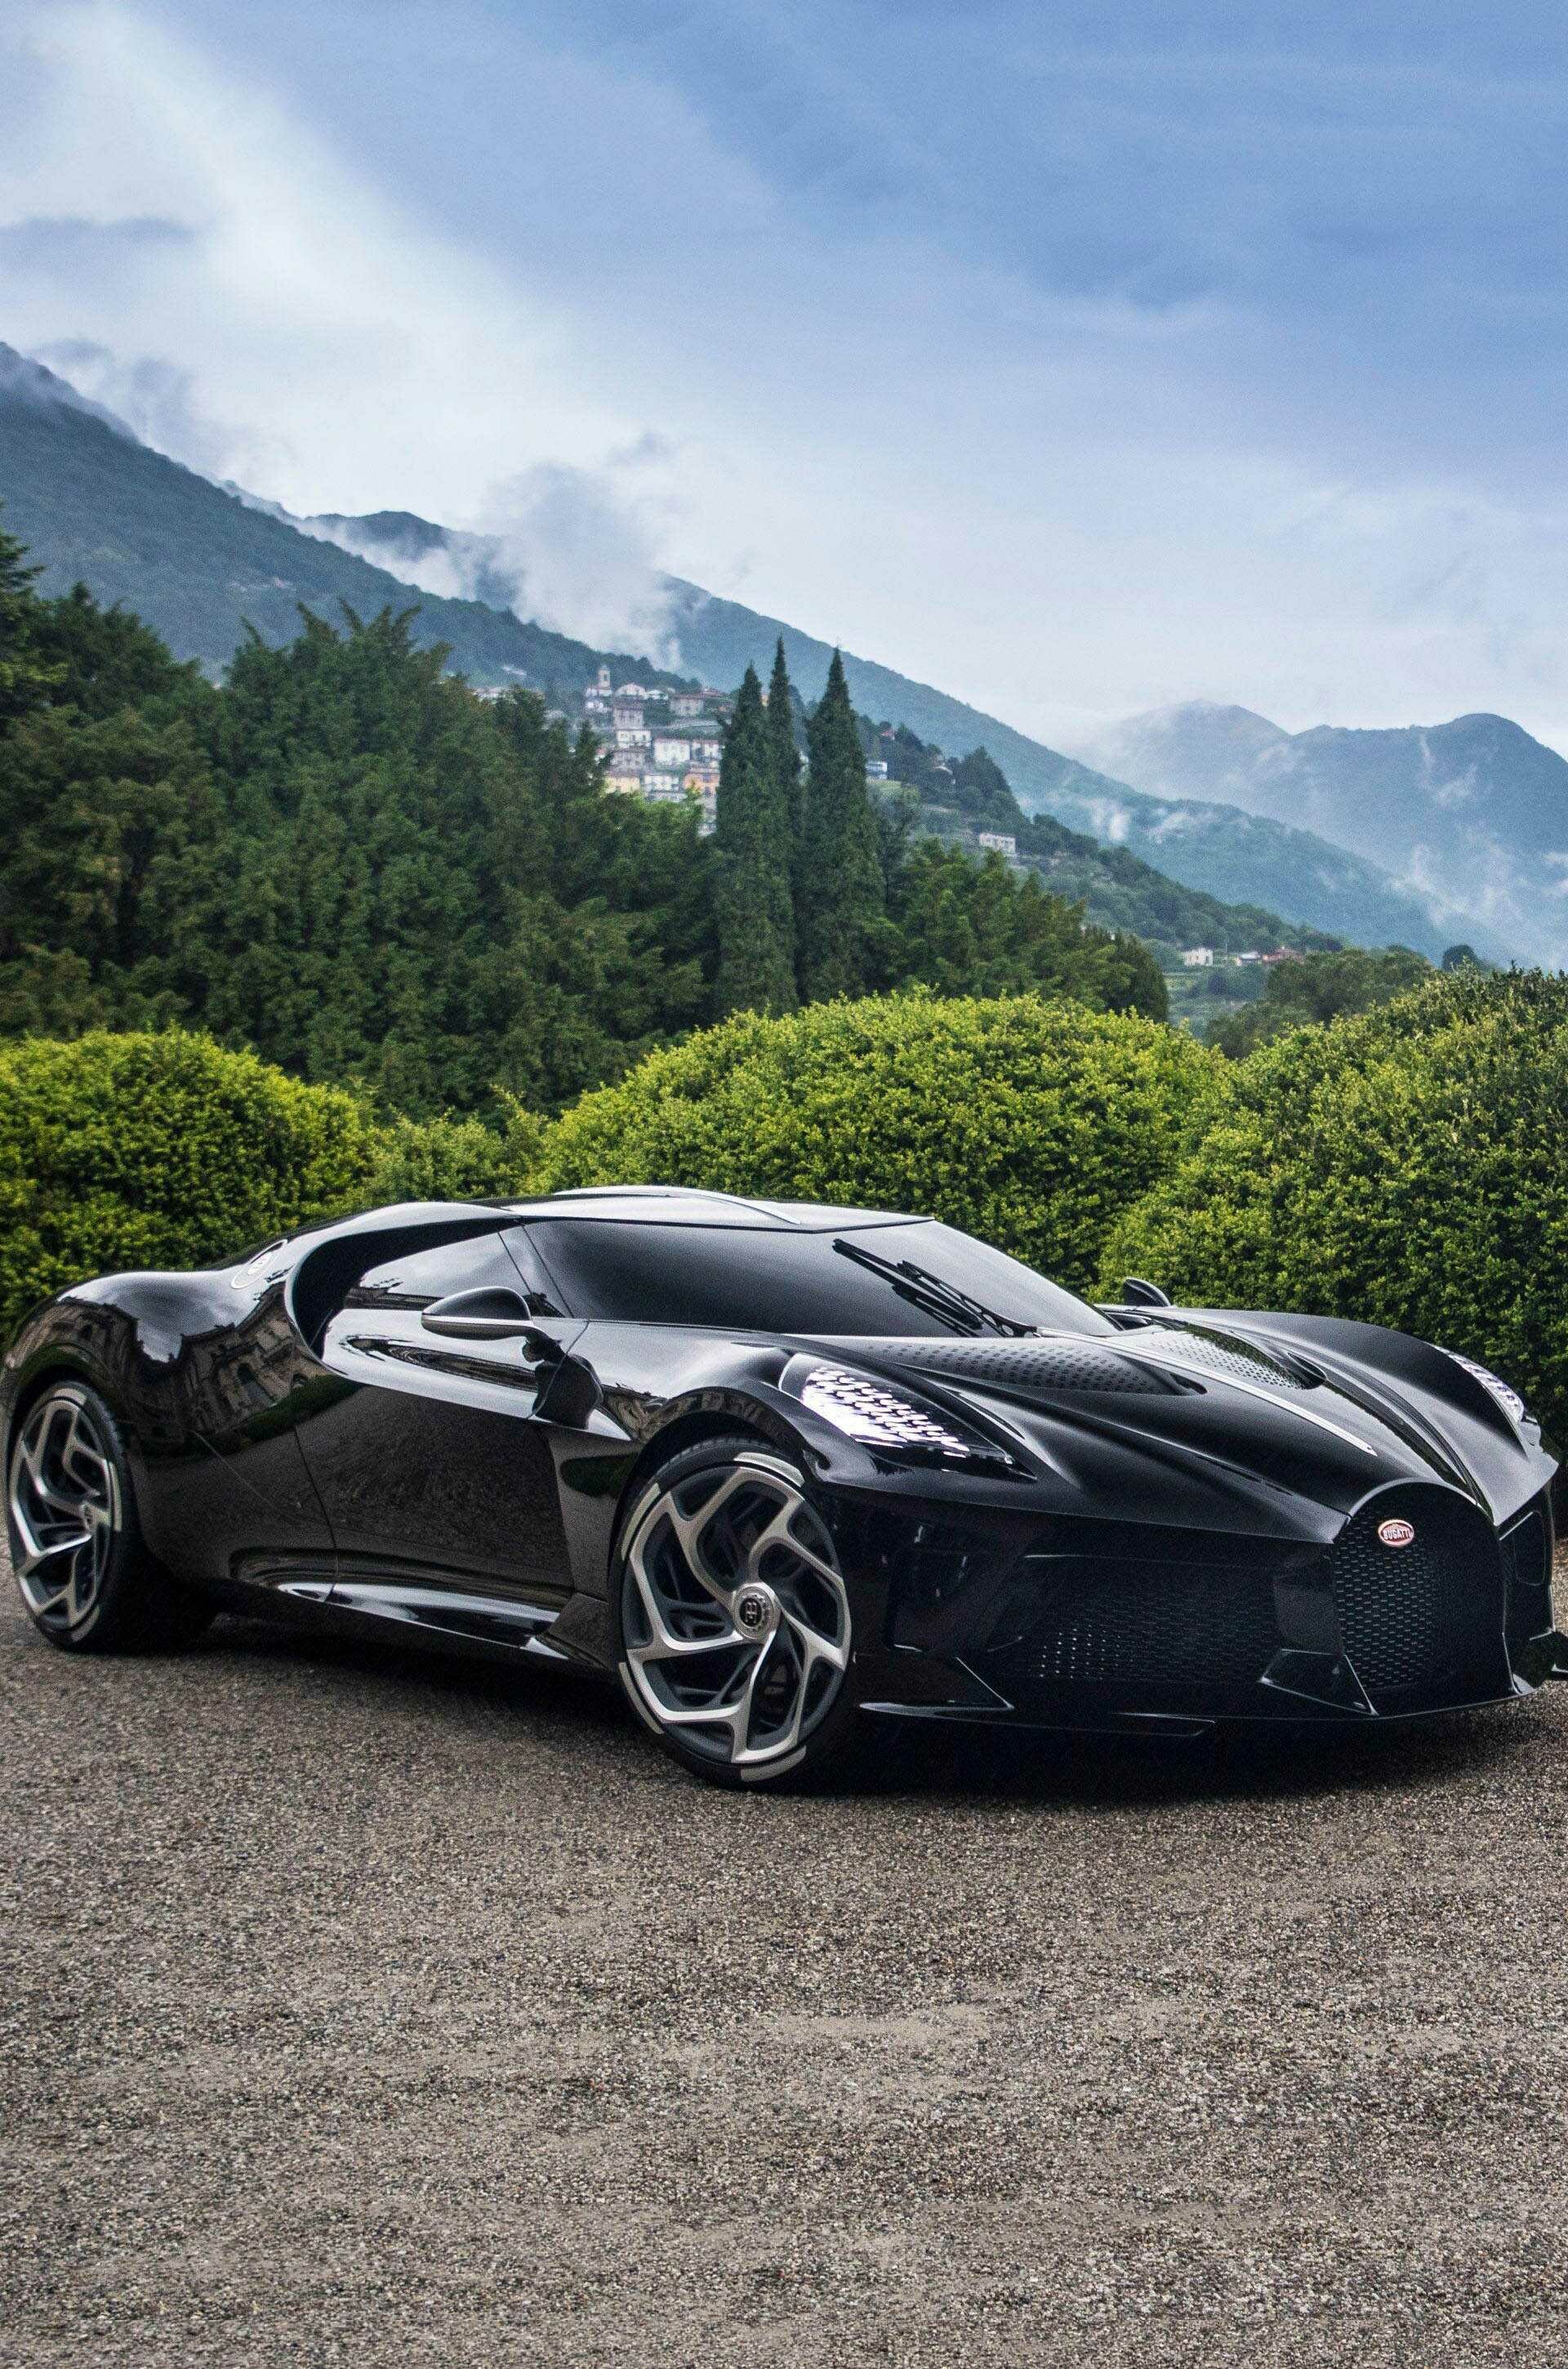 Bugatti La Voiture Noire: The car is a celebration of the company's distinctive design history. 1920x2900 HD Wallpaper.